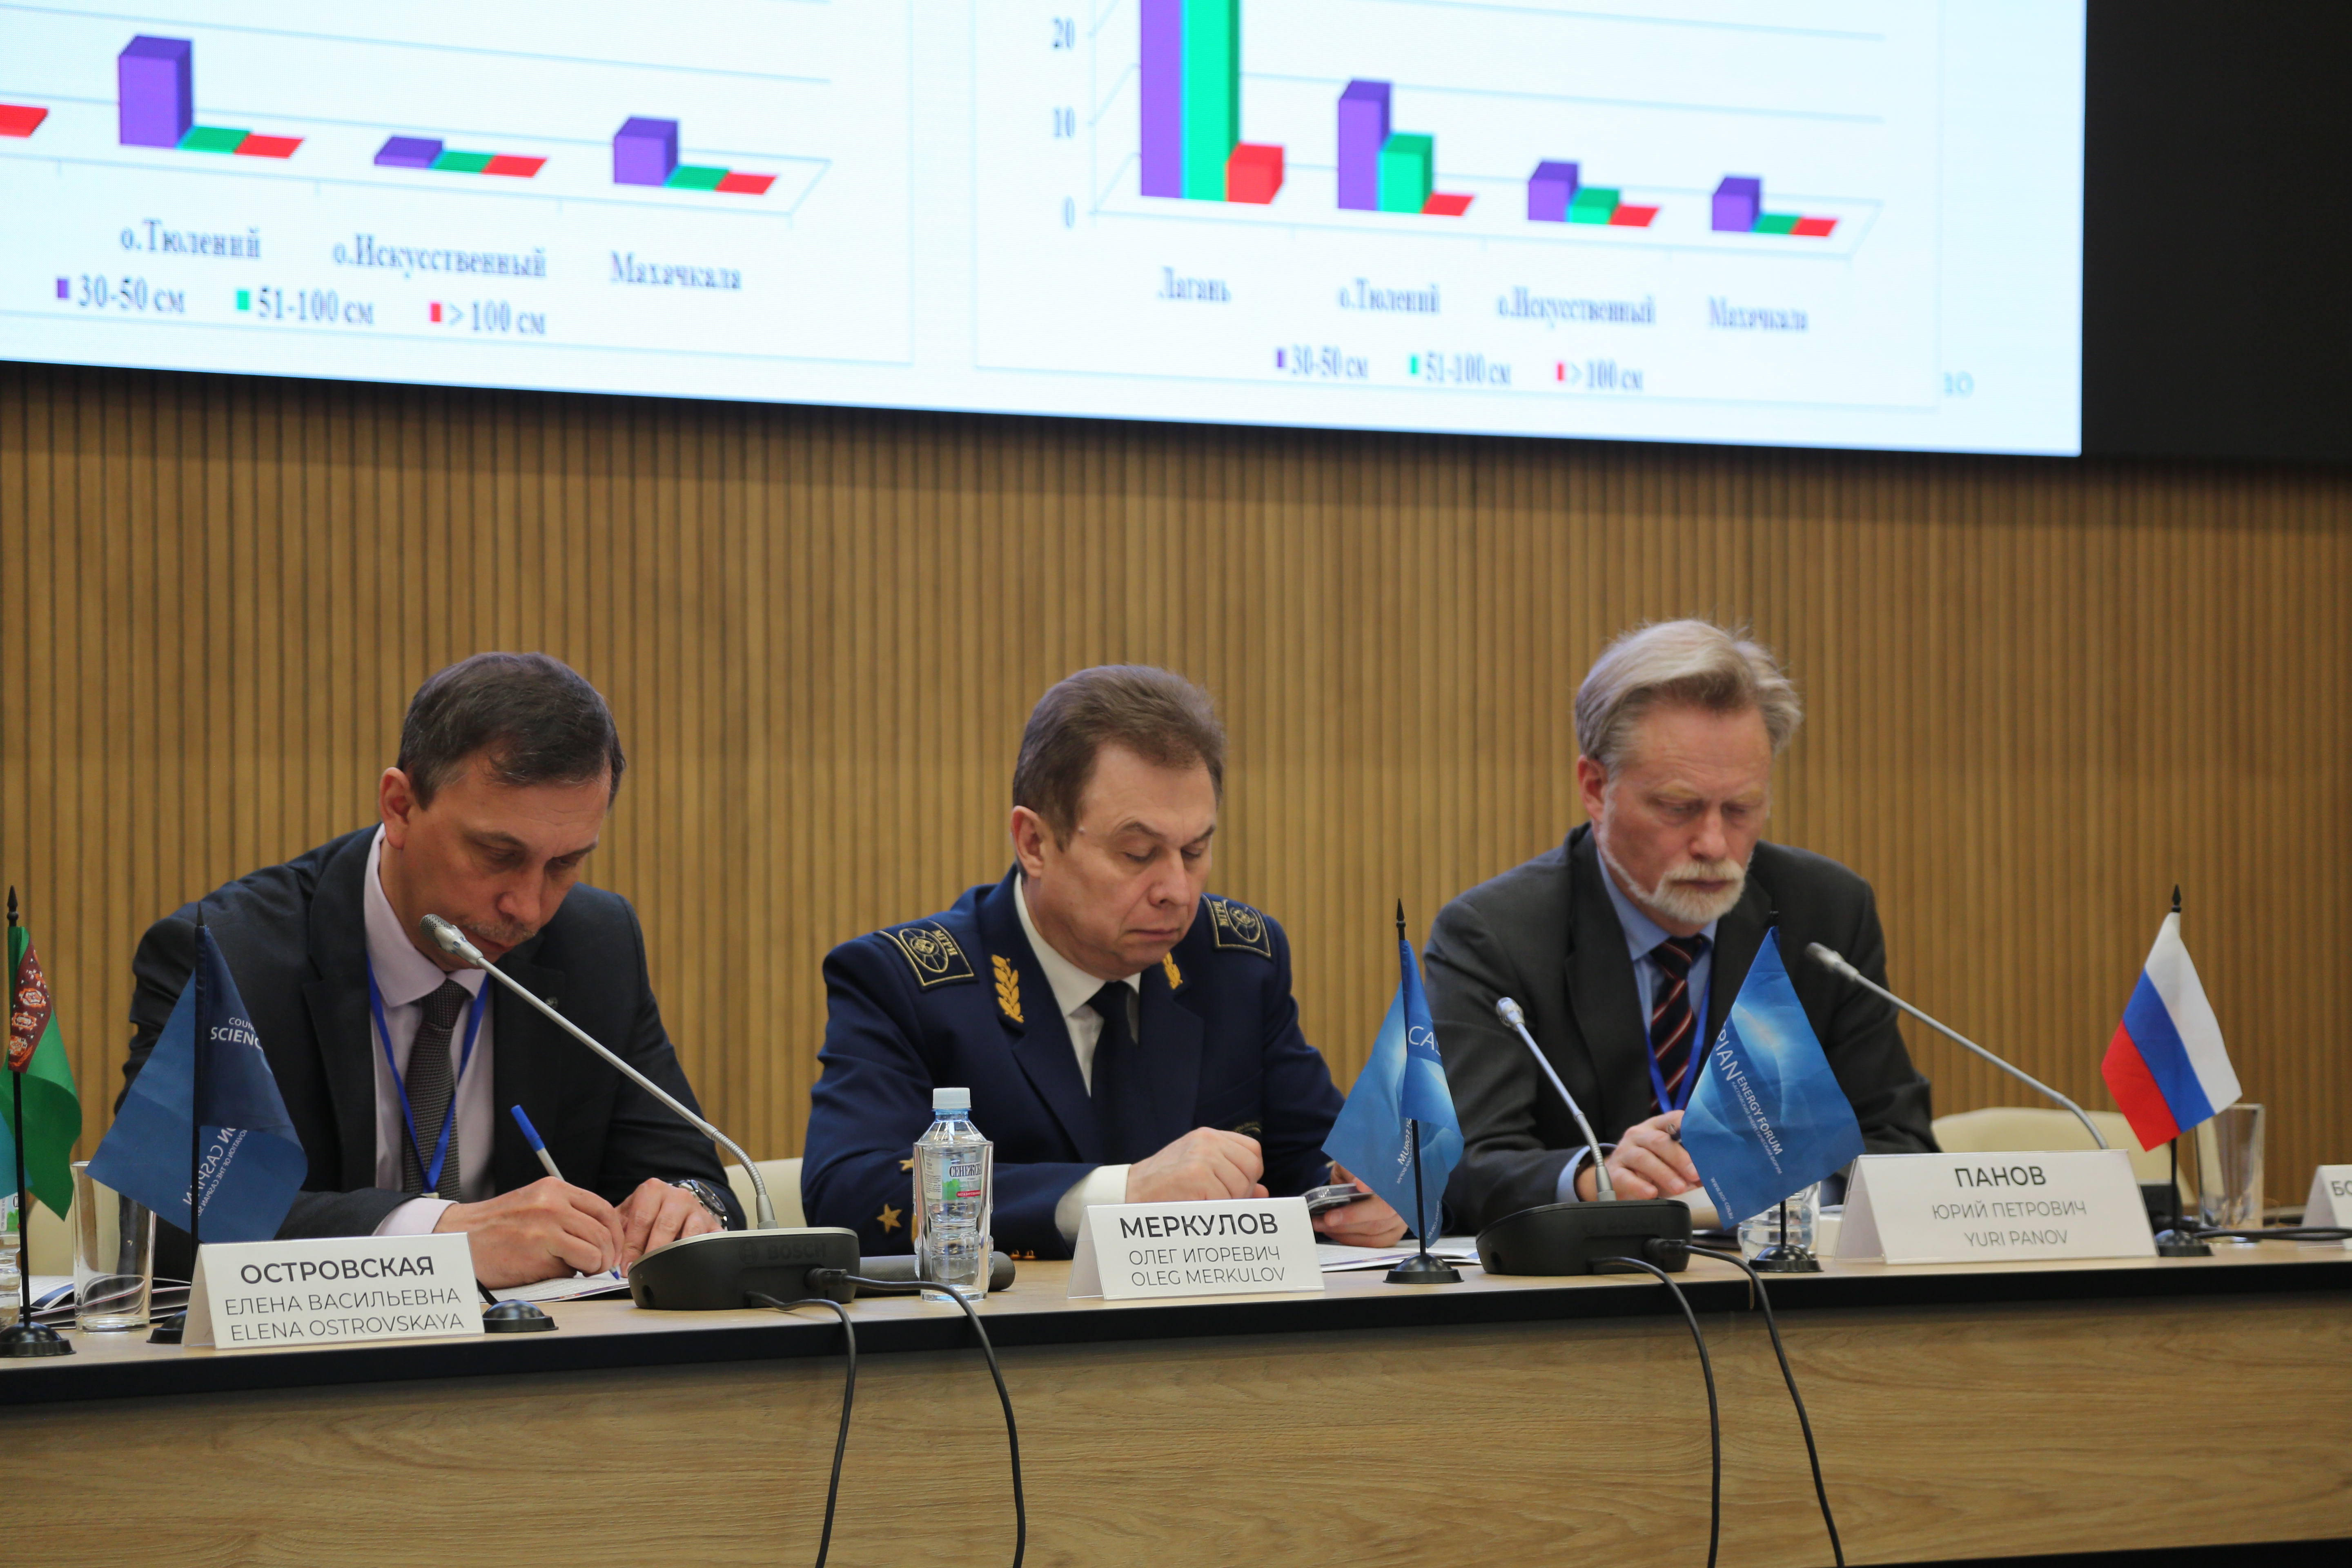 15-й Каспийский энергетический форум "Энергетический диалог в контексте обеспечения международной энергетической безопасности" 